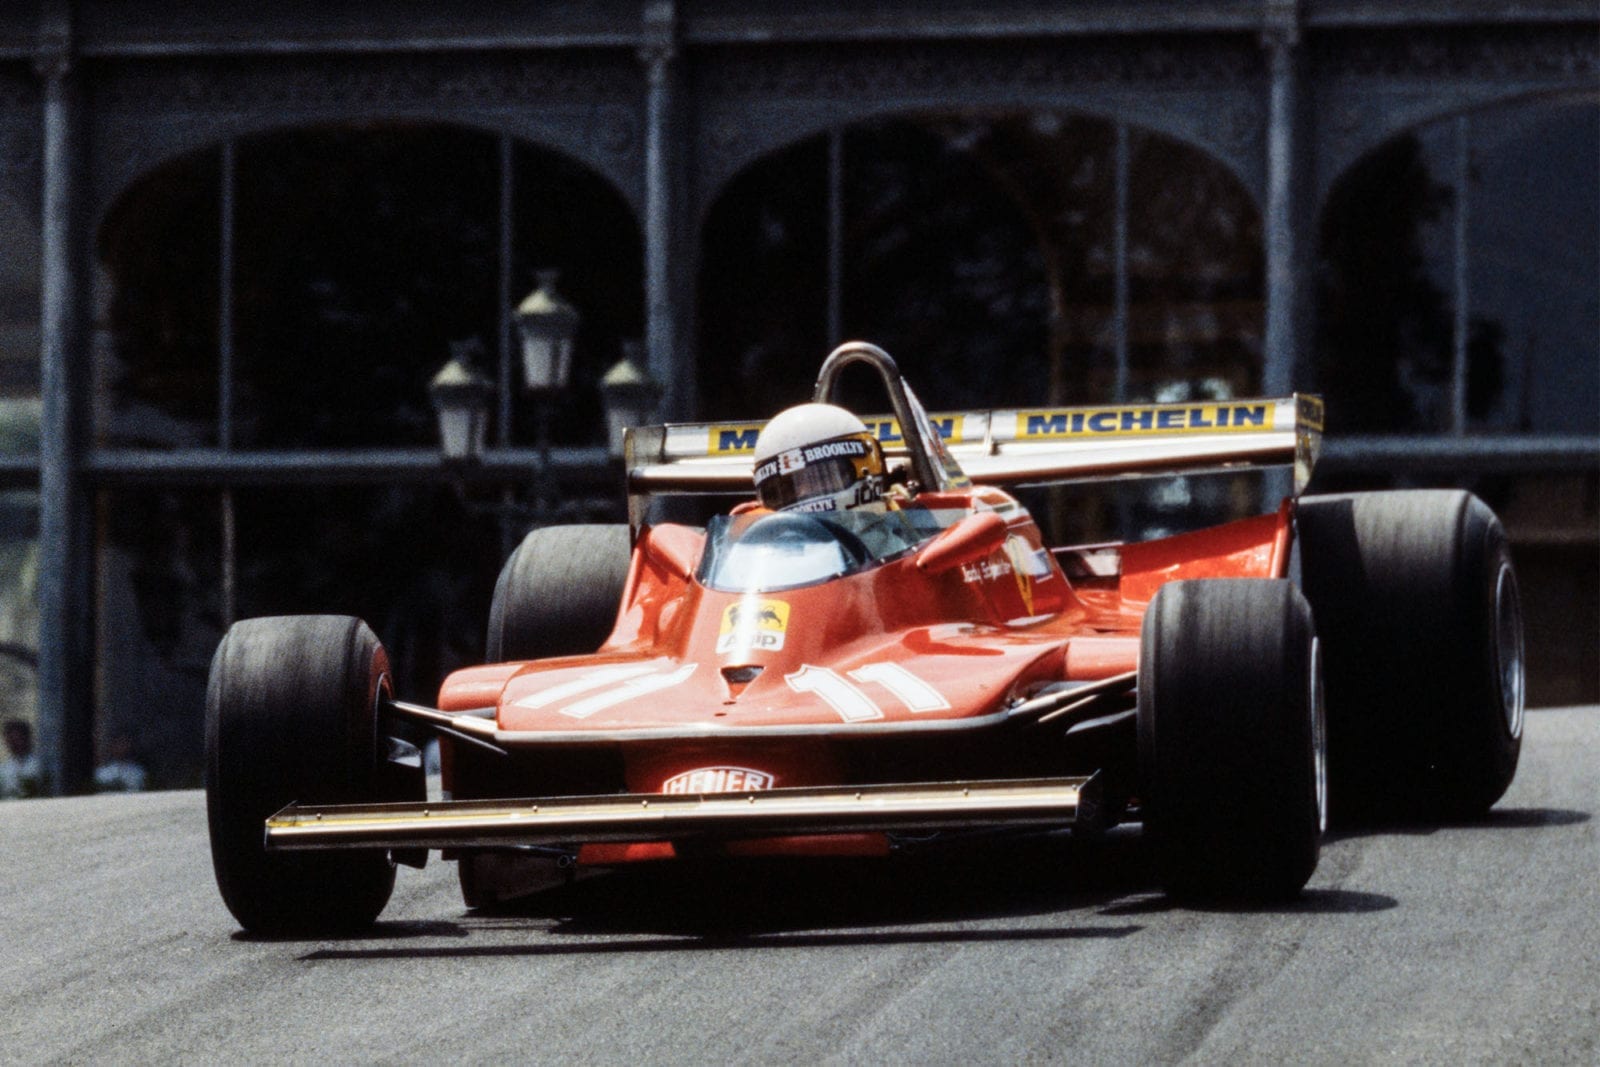 Jody Scheckter (Ferrari) driving at the 1979 Monaco Grand Prix.